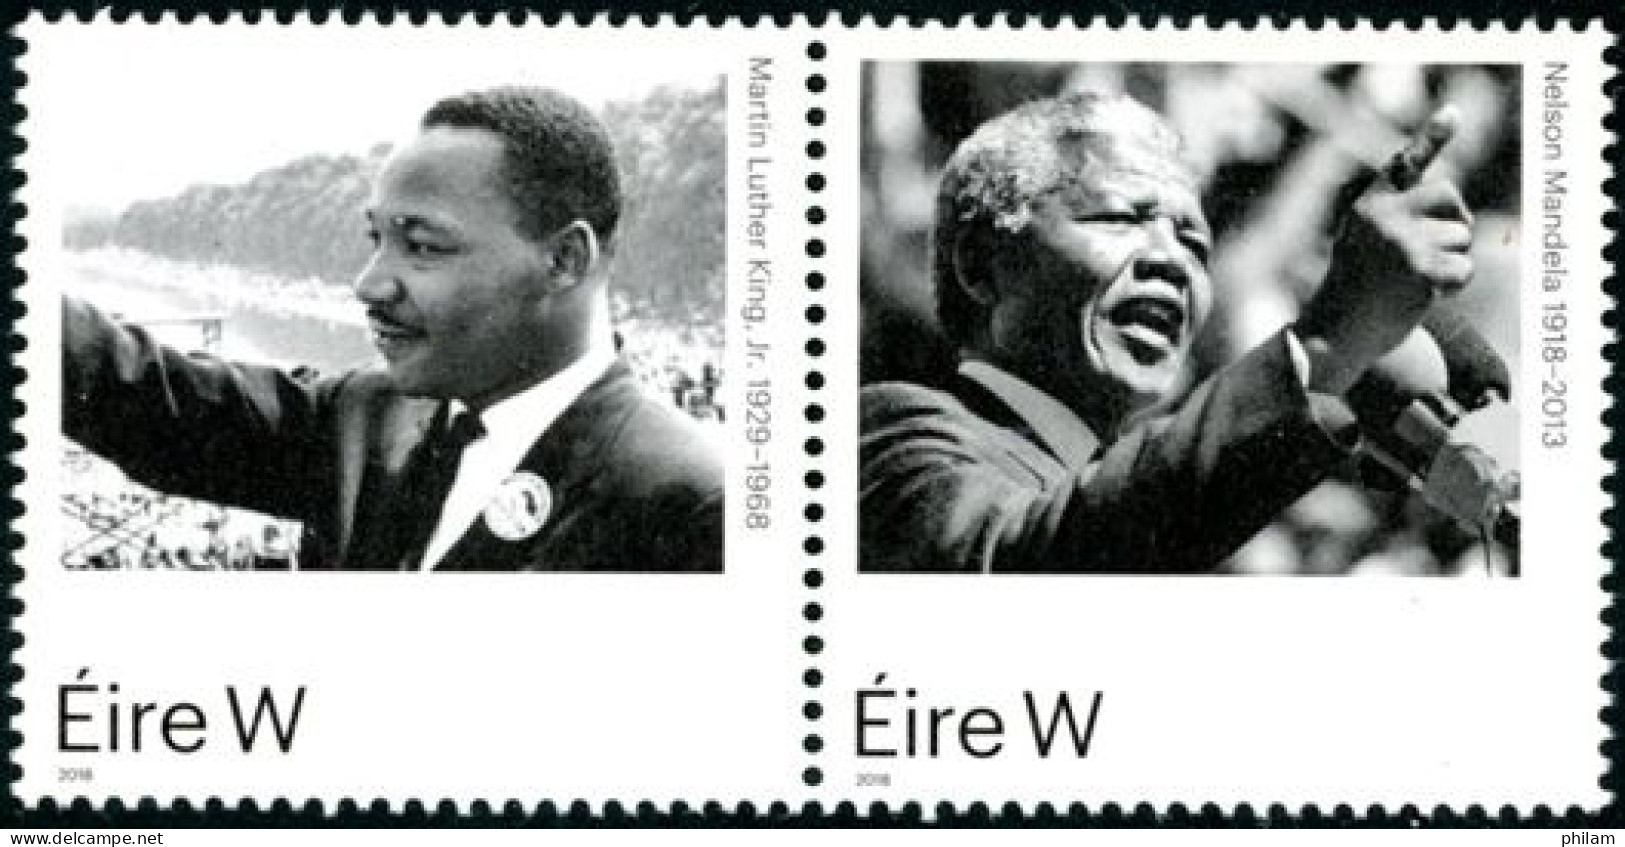 IRLANDE 2018 - Martin Luther King Et Nelson Mandela - 2 V. - Ongebruikt